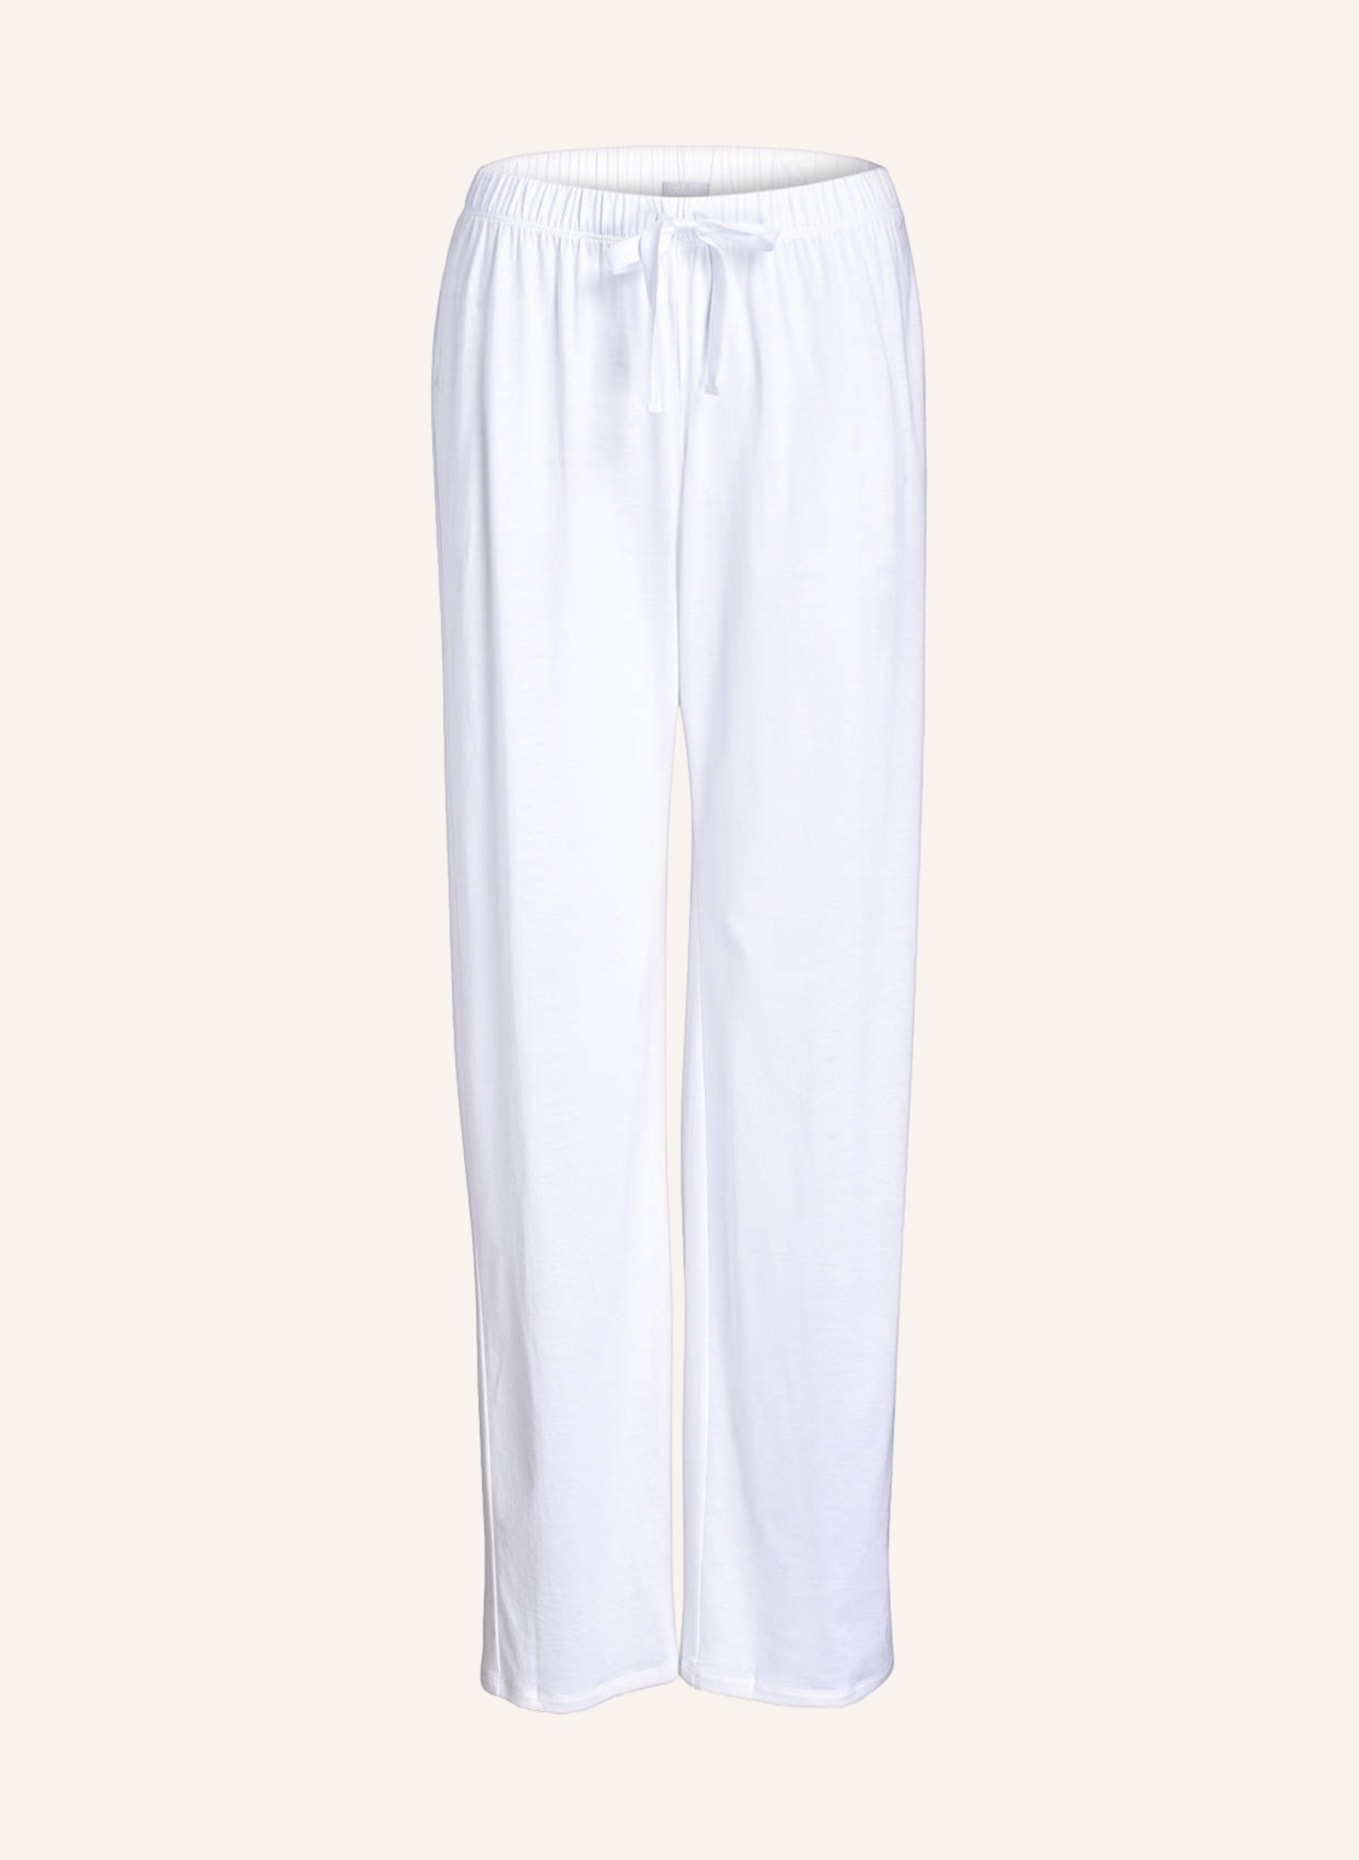 HANRO Pajama pants COTTON DELUXE, Color: WHITE (Image 1)